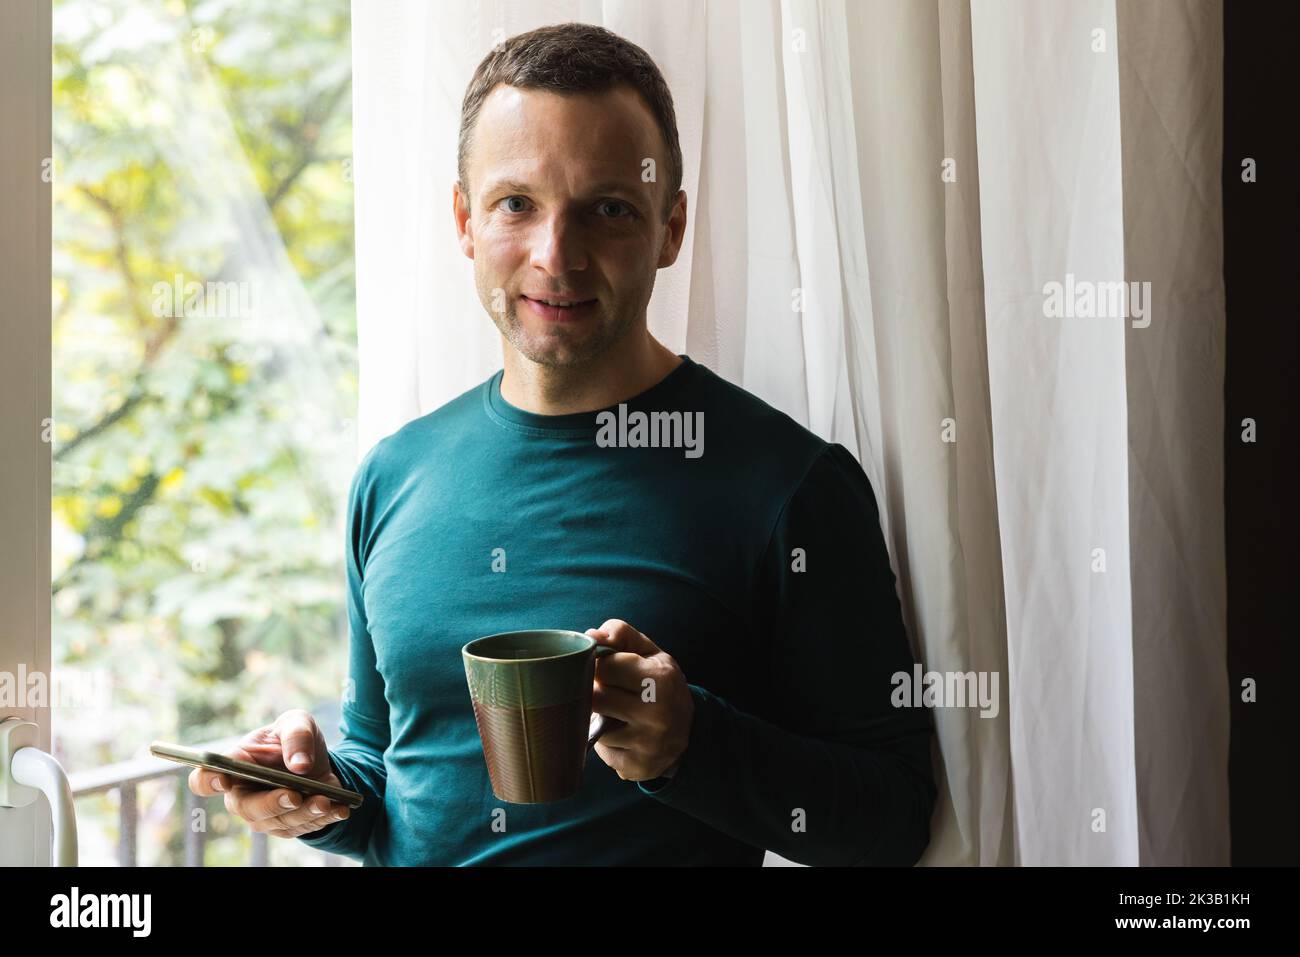 Retrato casero casual de un hombre caucásico adulto joven levemente sonriente con una taza de café y un smartphone en sus manos Foto de stock